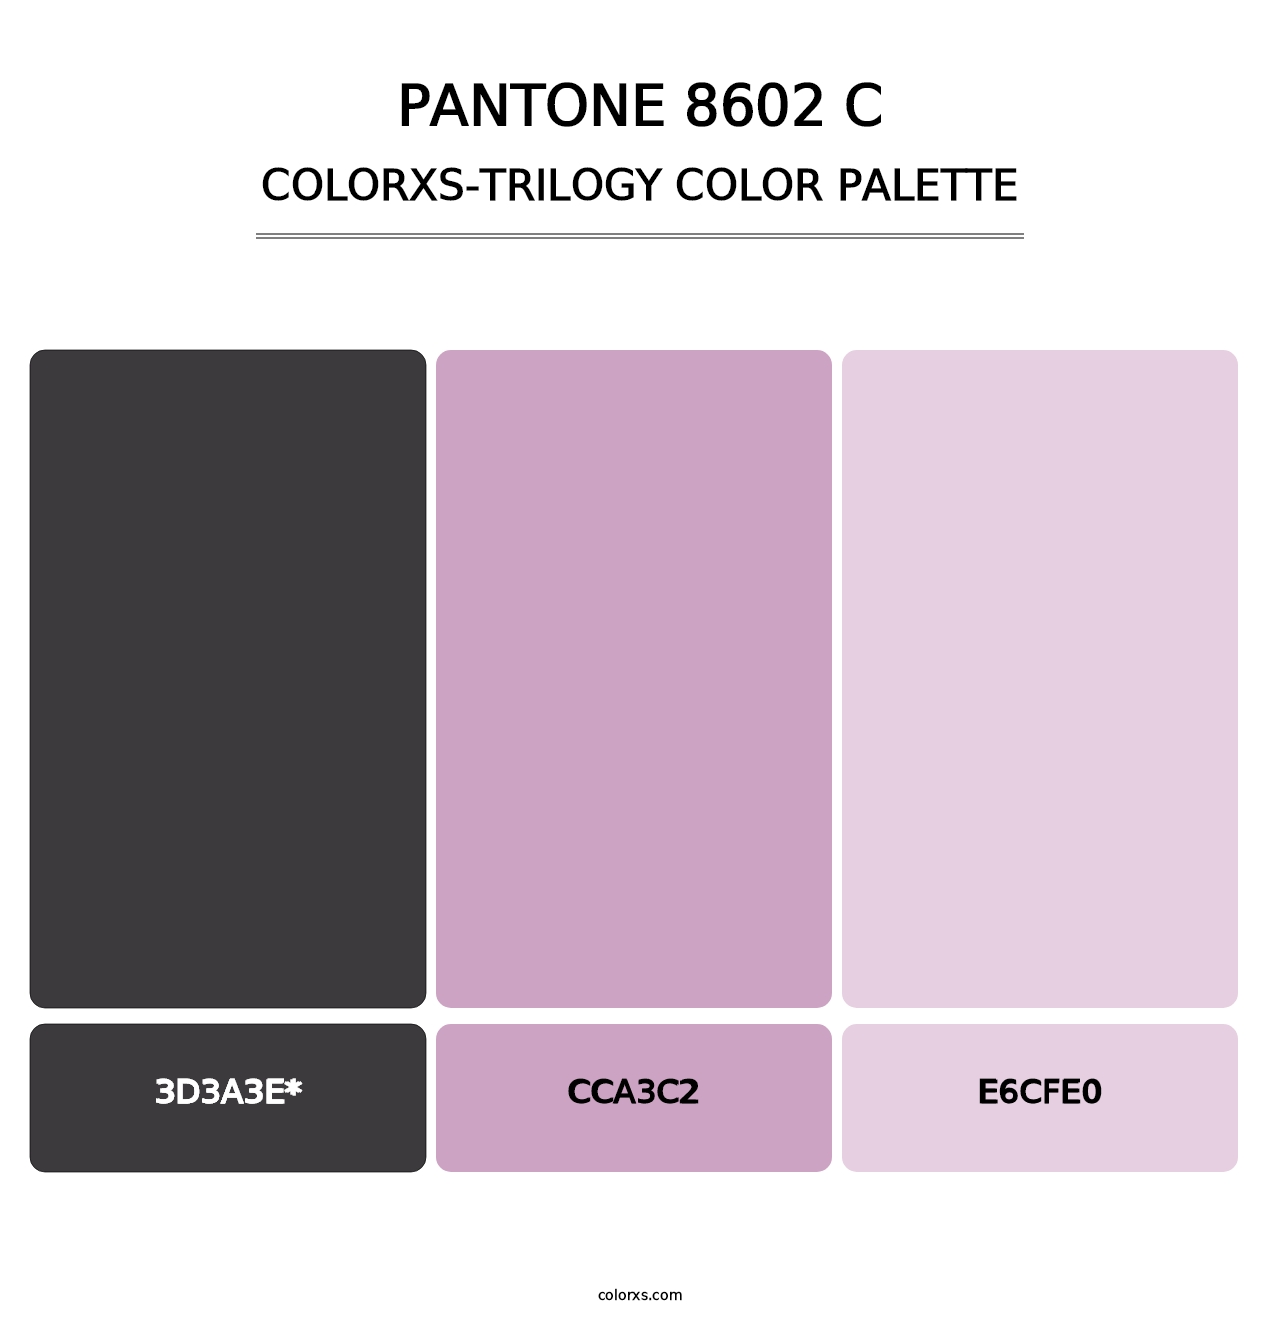 PANTONE 8602 C - Colorxs Trilogy Palette